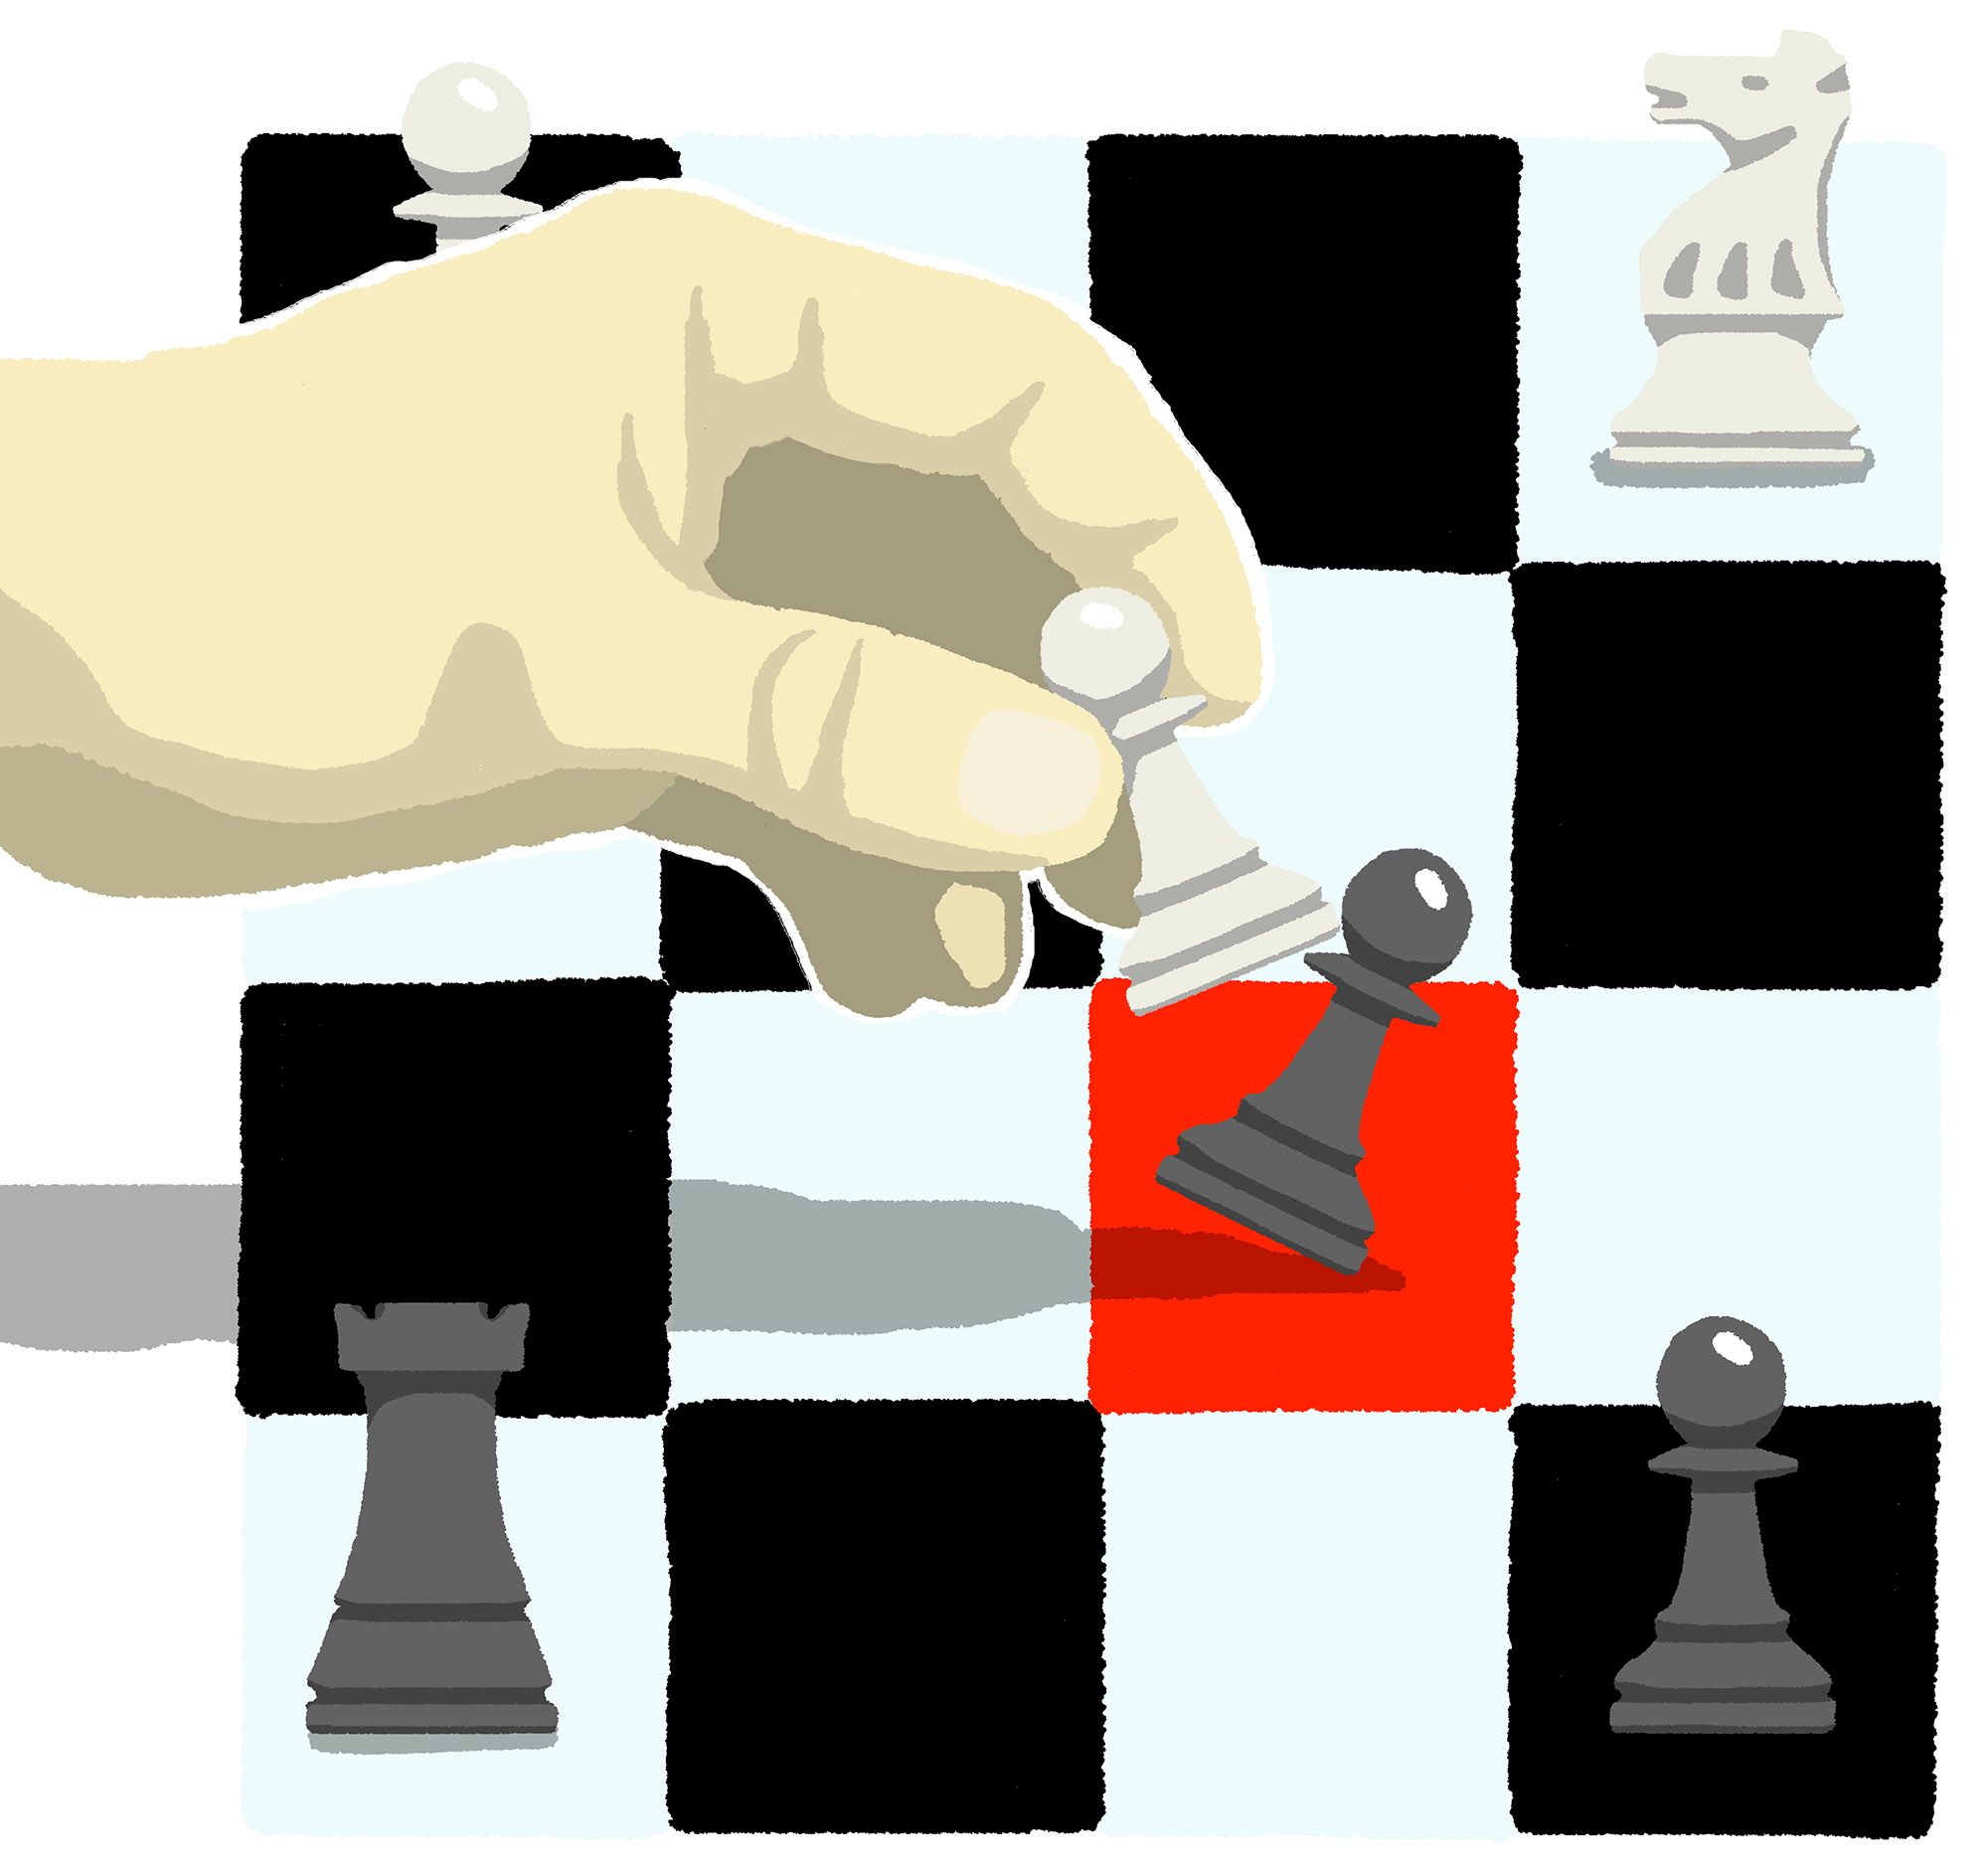 Blog - Más que un simple juego: El valor educativo del ajedrez - Educación  Chile - Registro ATE - Ministerio de Educación